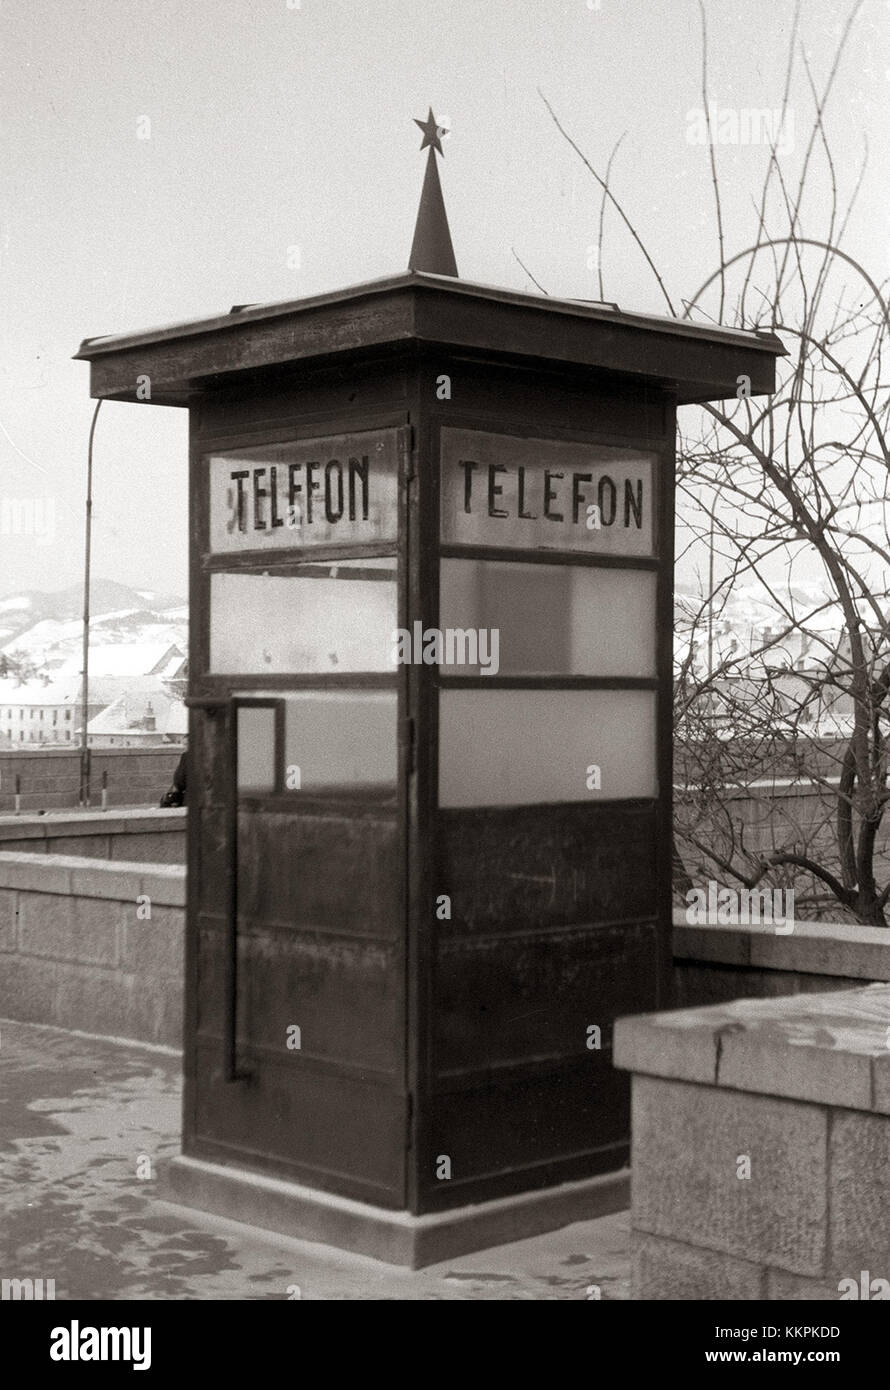 Zadnja javna telefonska govorilnica na Trgu revolucije 1956 Stock Photo -  Alamy